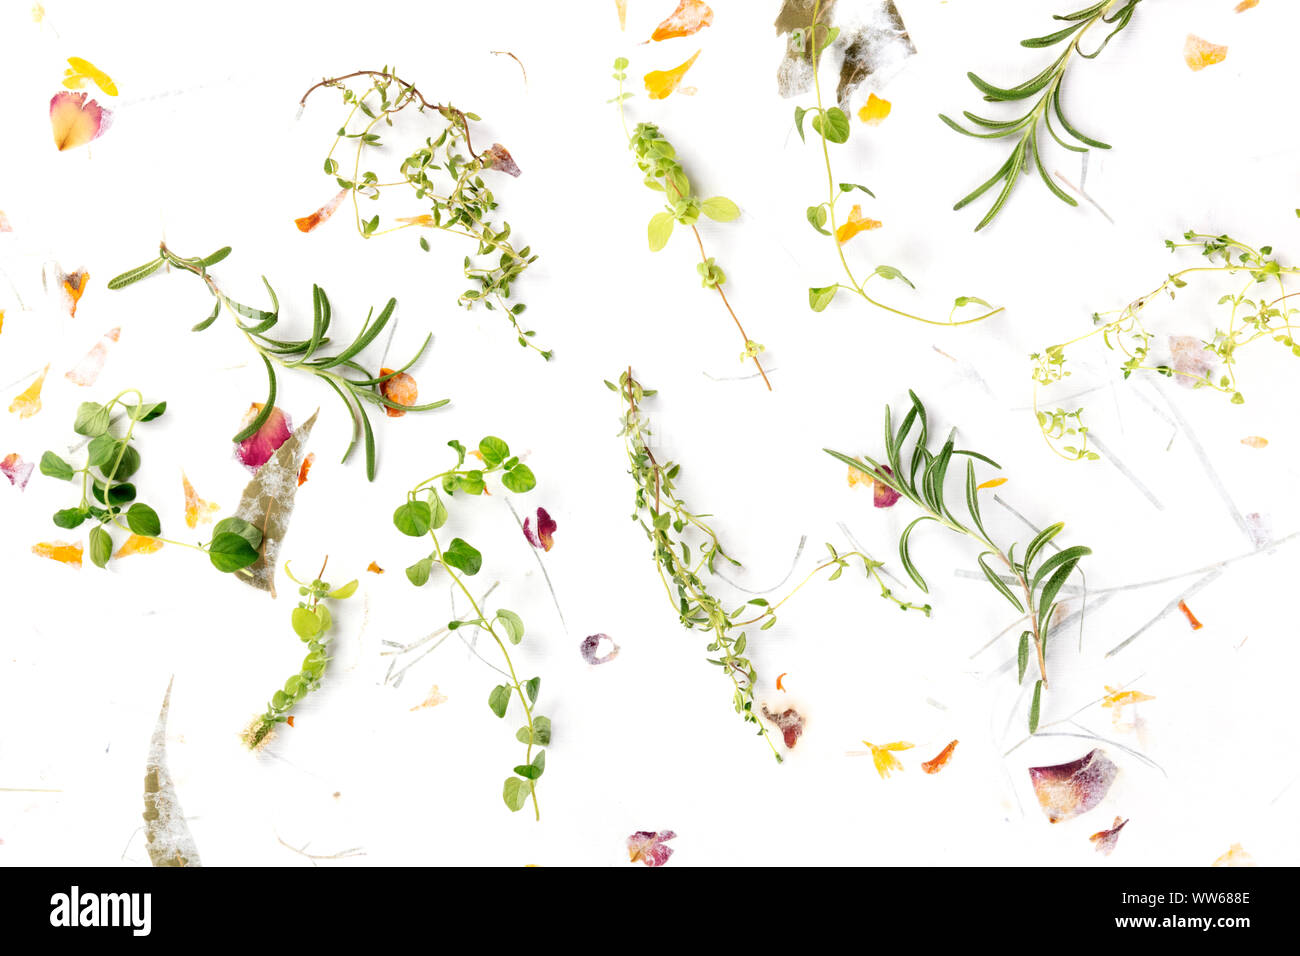 Le erbe di Provenza. Rosmarino, origano, timo e maggiorana, ripresa dall'alto su uno sfondo di foglie secche e petali Foto Stock